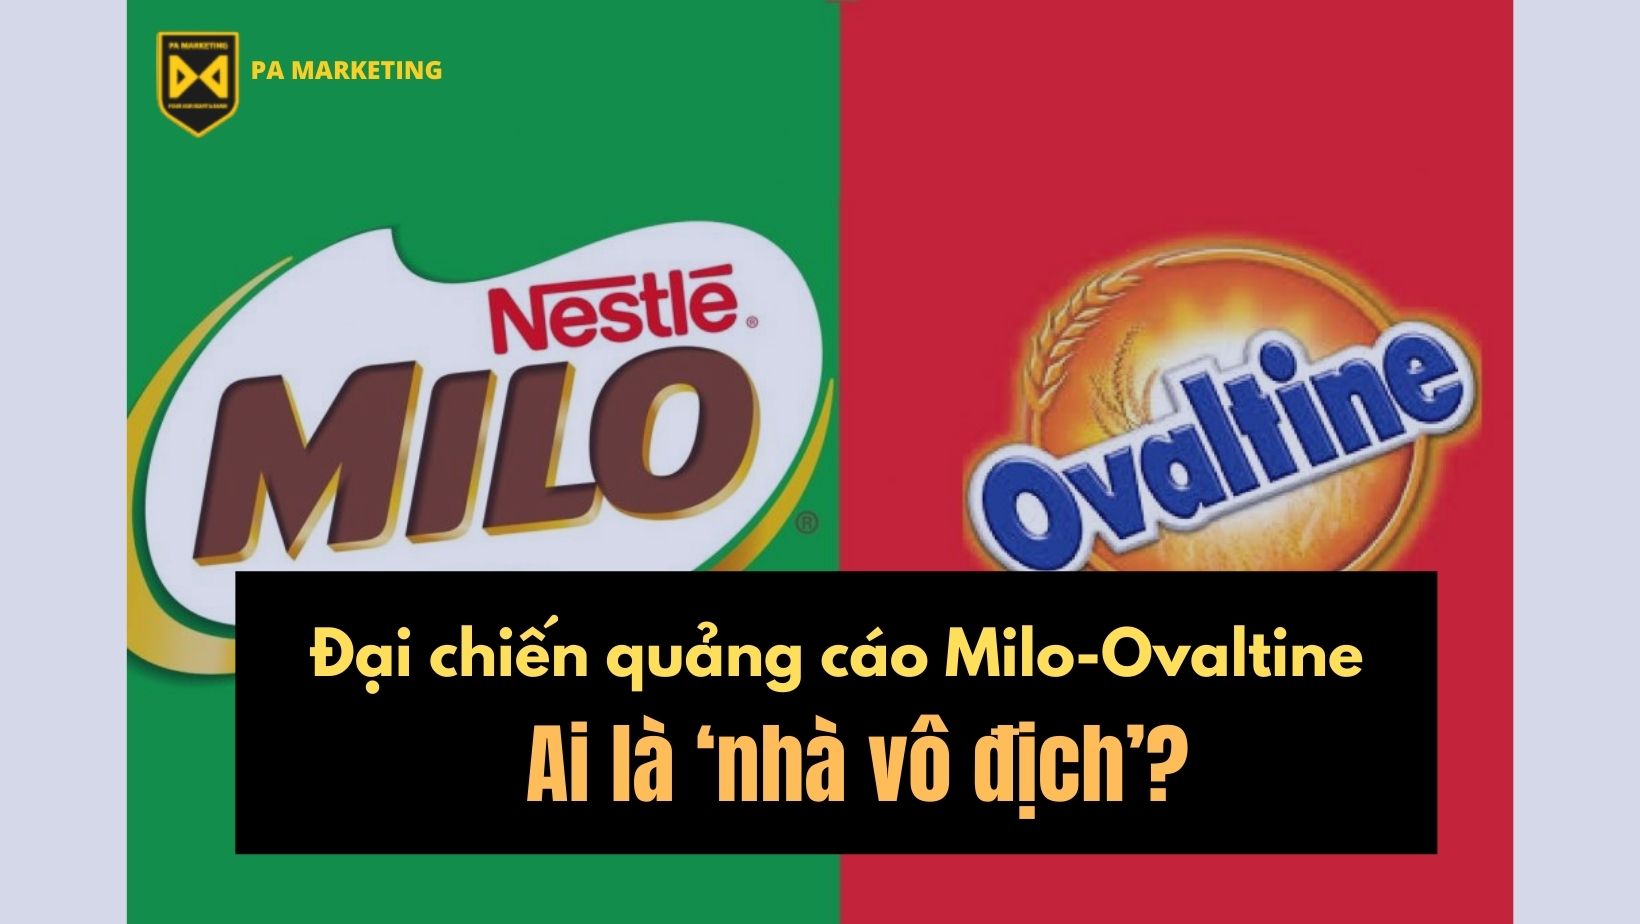 Review Thùng 24 hộp sữa lúa mạch Nestlé MILO Dynamind Bạc Hà mới (24*200ml)